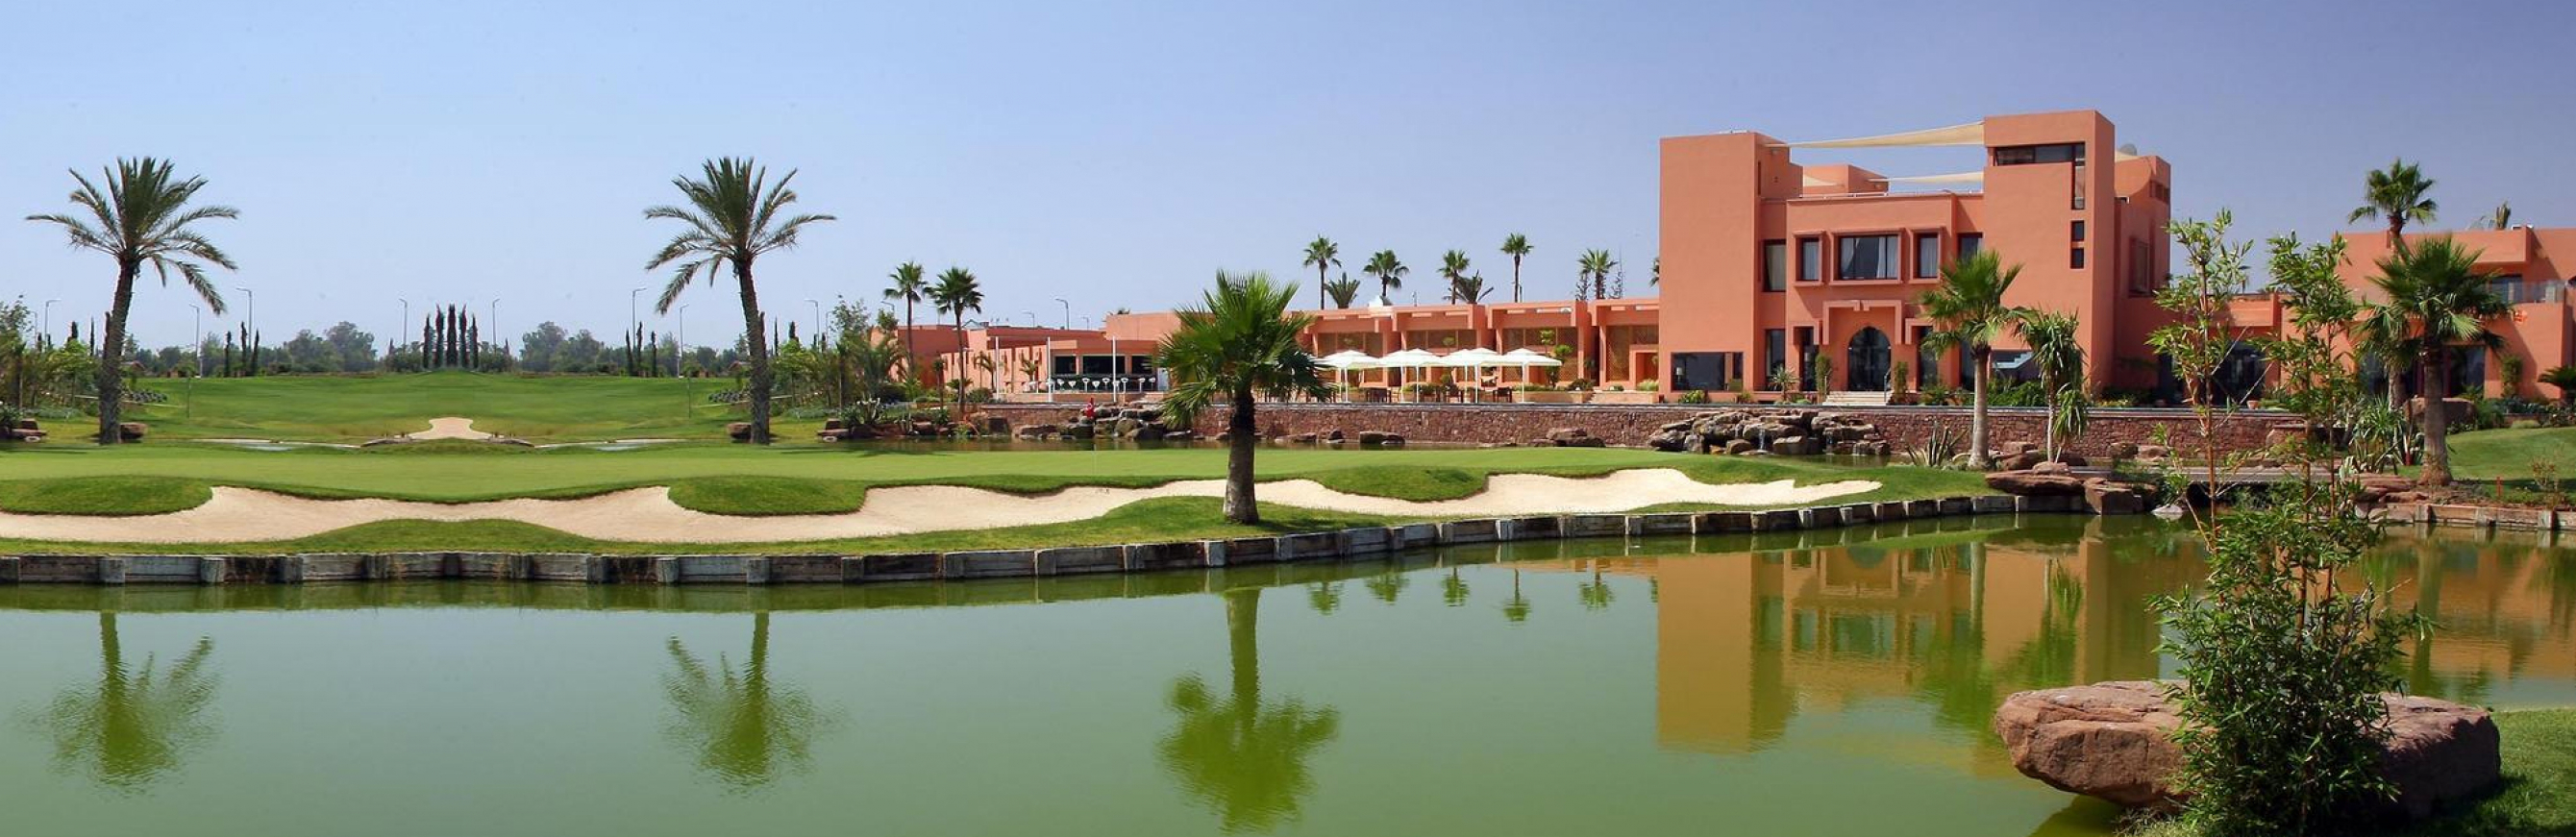 Golfez à Marrakech à partir de 1975 €*
Séjour  8 Jours / 7 nuits dans un Riad de Charme avec stage 5 jours  Multi-parcours avec Lionel BERARD, fondateur de la Méthode MRP.

Du 13 au 20 Mars 2022
Du 20 au 27 Mars 2022
